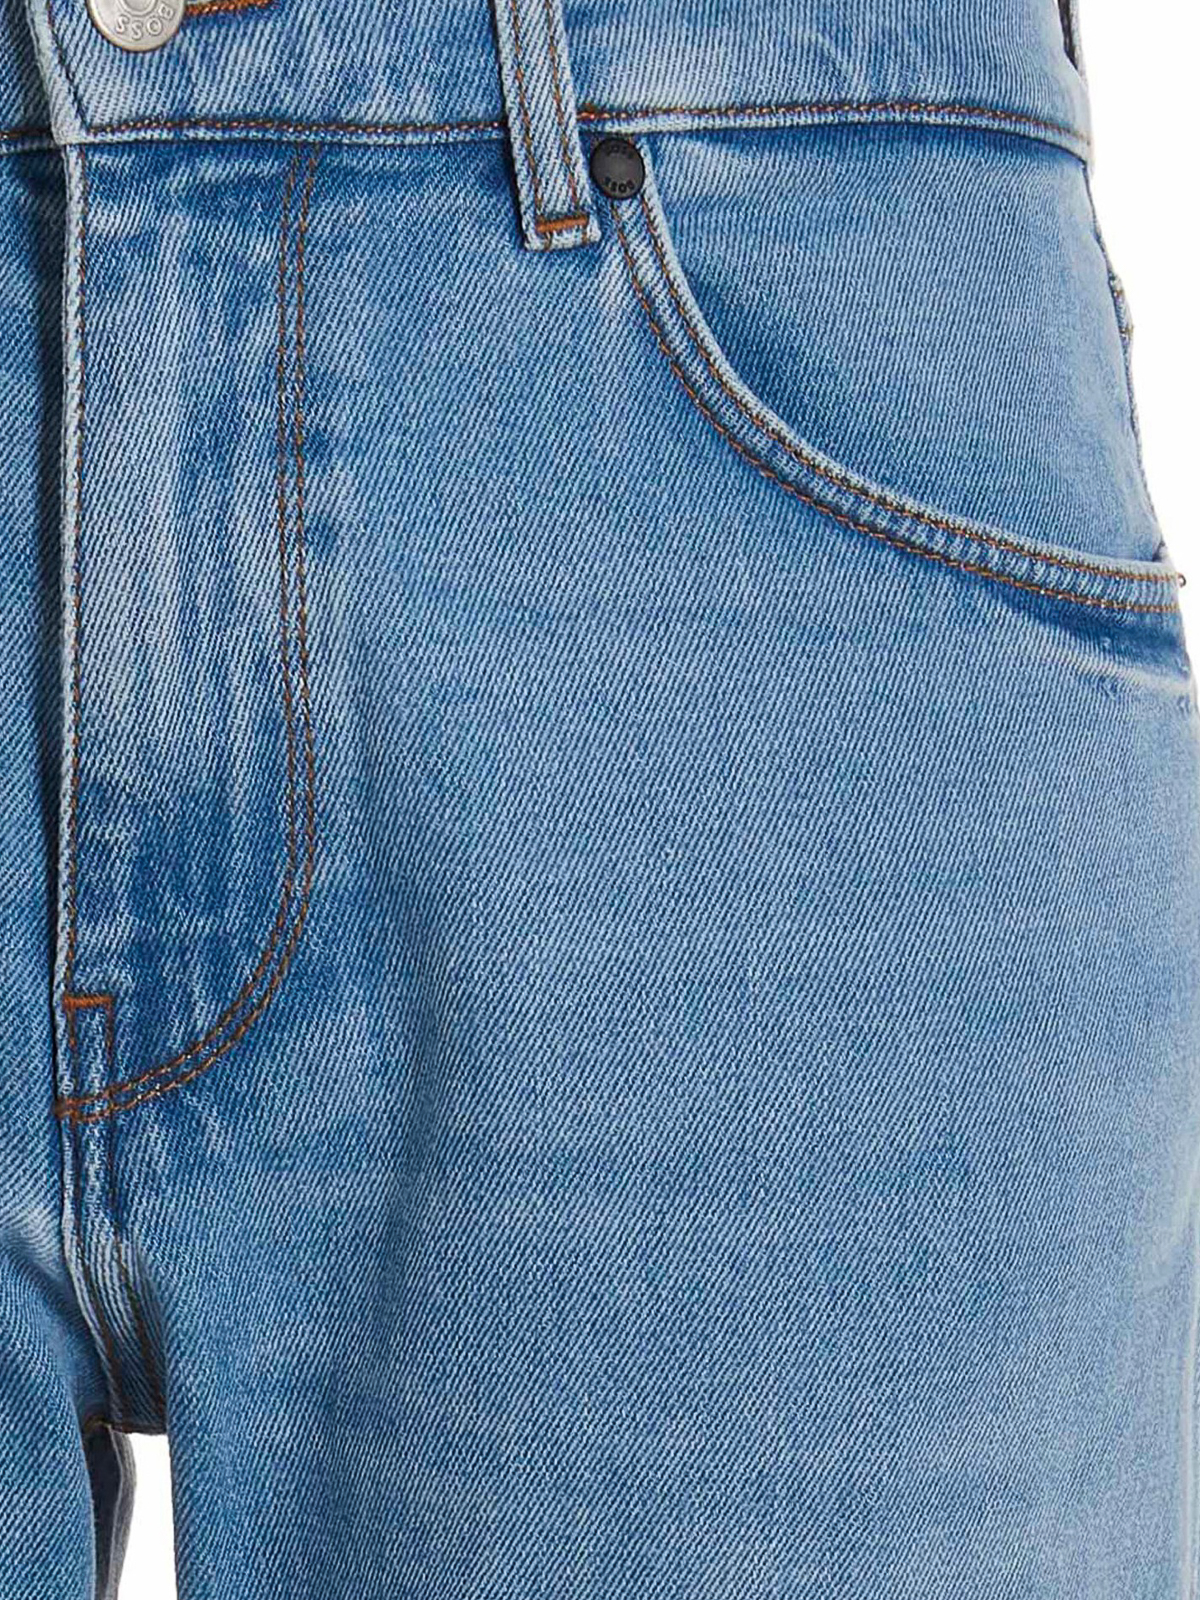 Straight leg jeans Hugo Boss - Maine3 - 50488586455